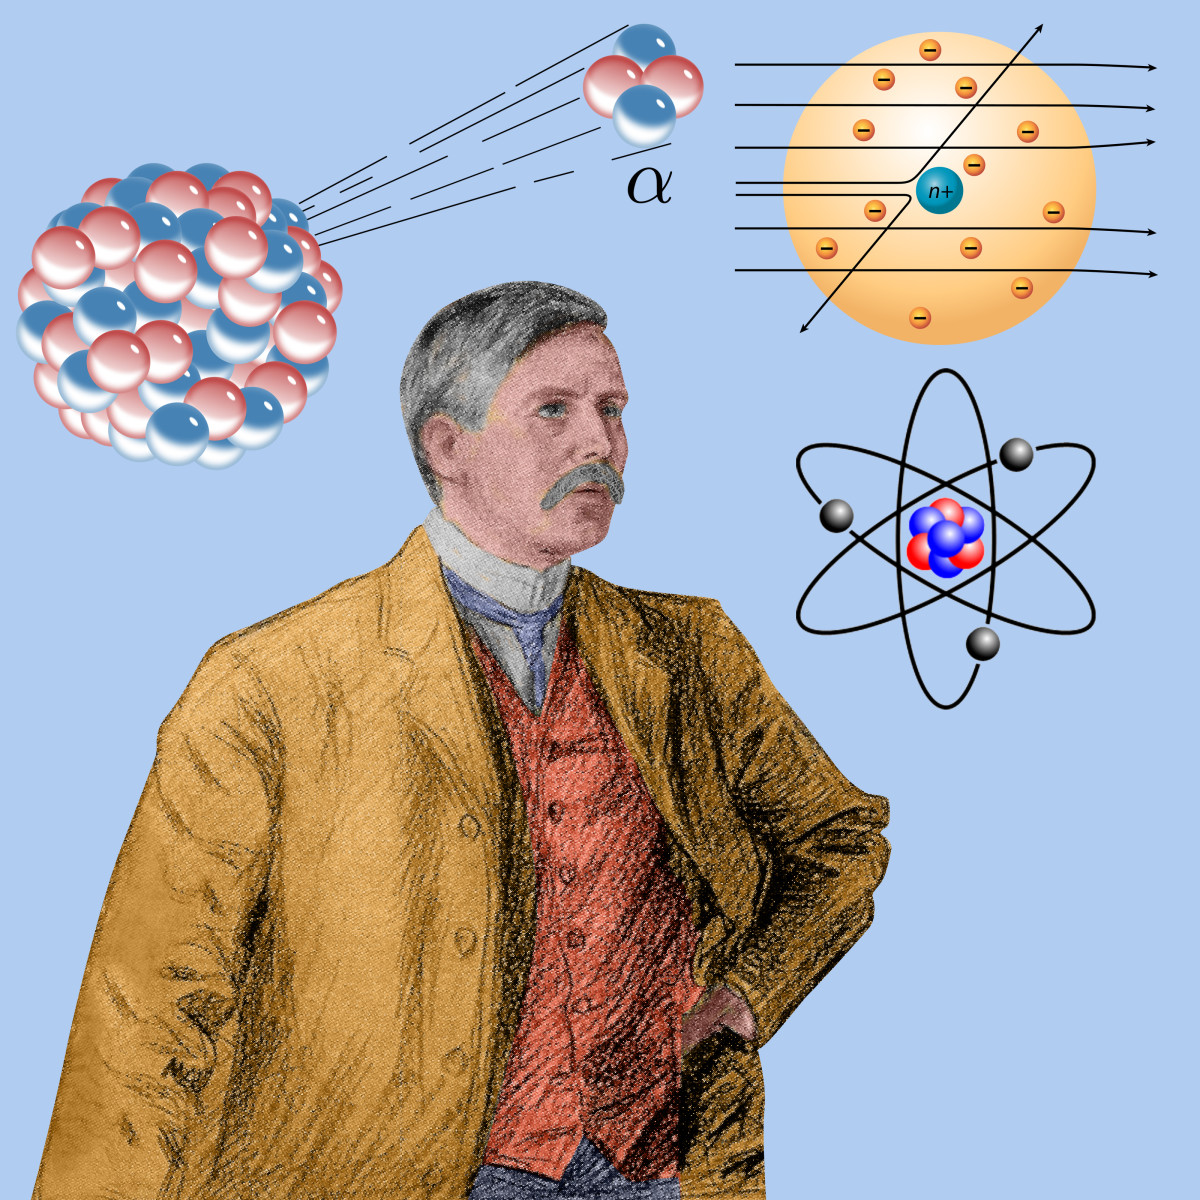 后来卢瑟福通过大量的α粒子散射实验得出结论,认为原子内部有个原子